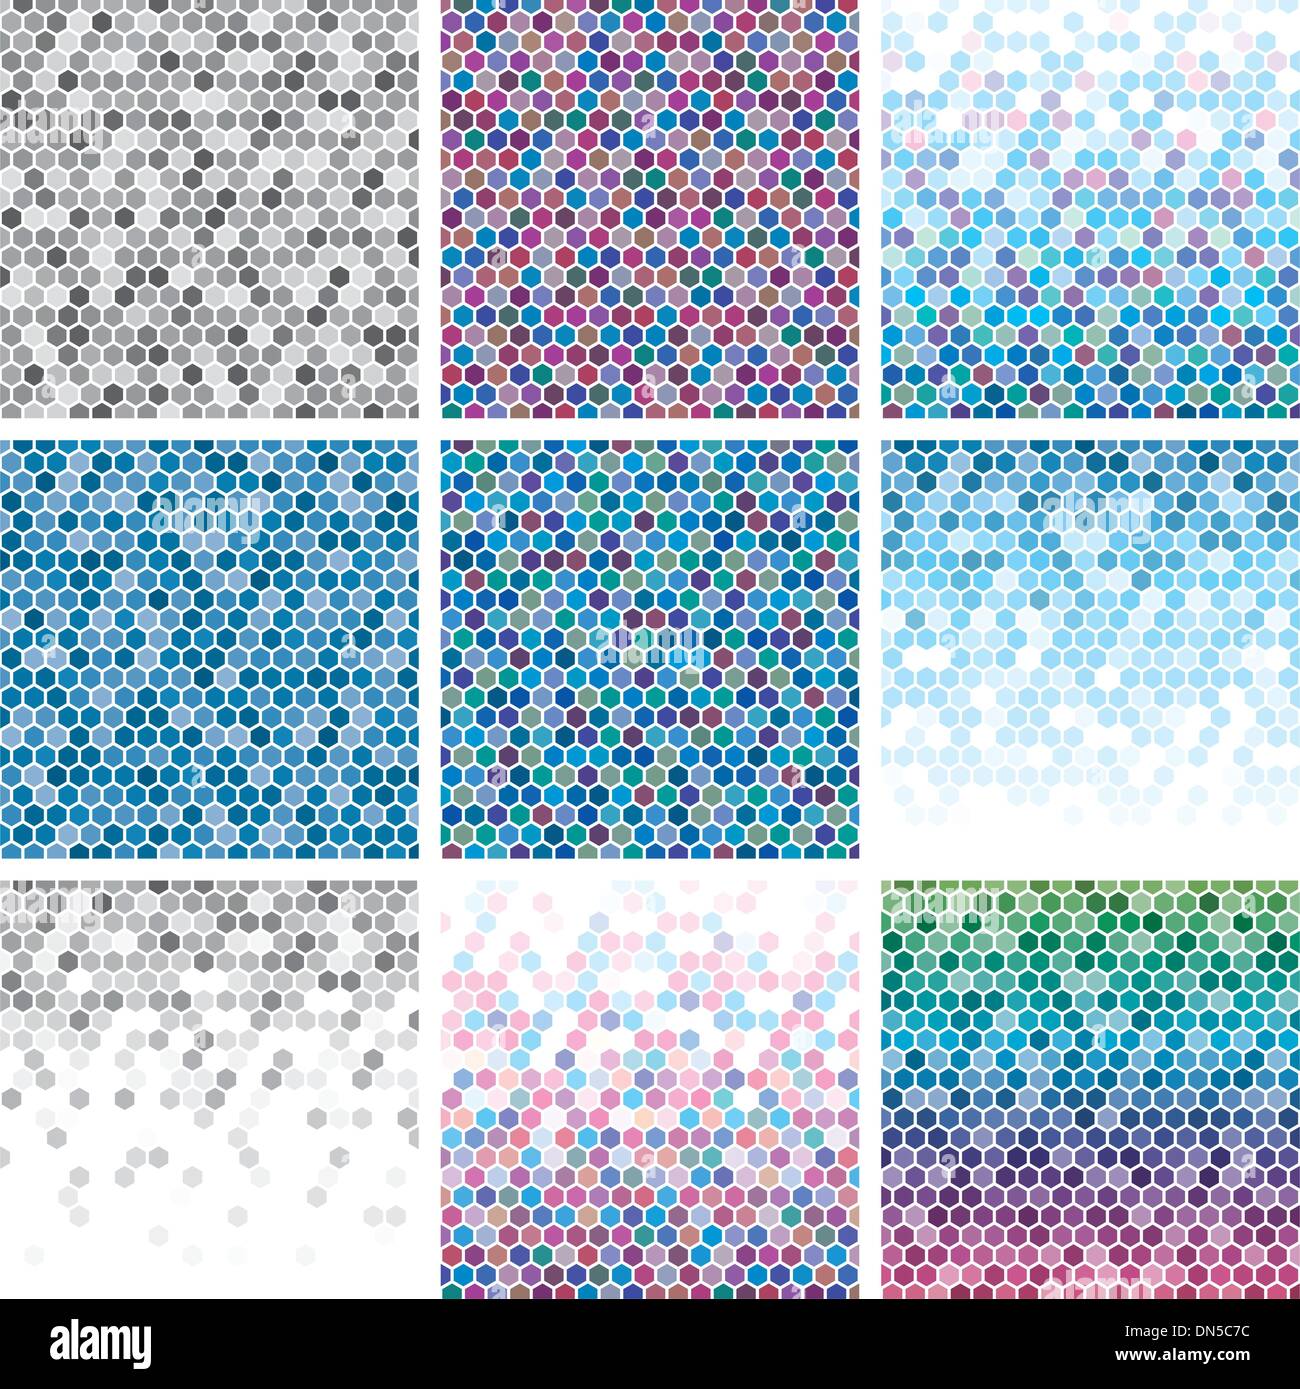 vector abstract hexagon tile backgrounds Stock Vector